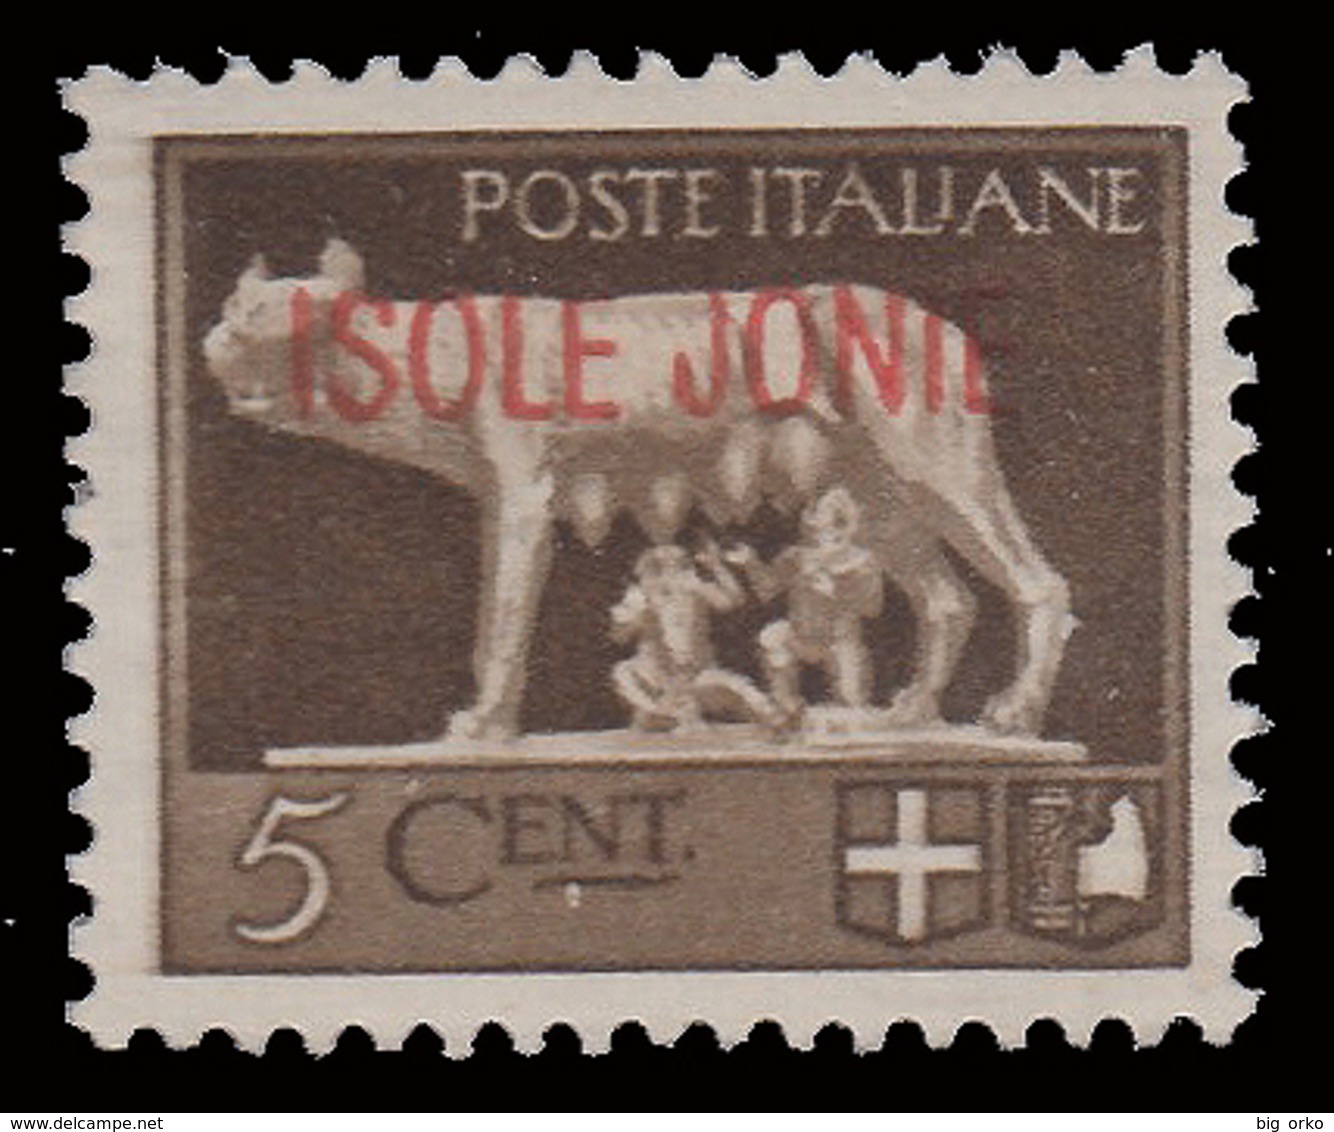 ITALIA - ISOLE JONIE (Emissioni Generali) - 5 C. Bruno - 1941 - Isole Ioniche